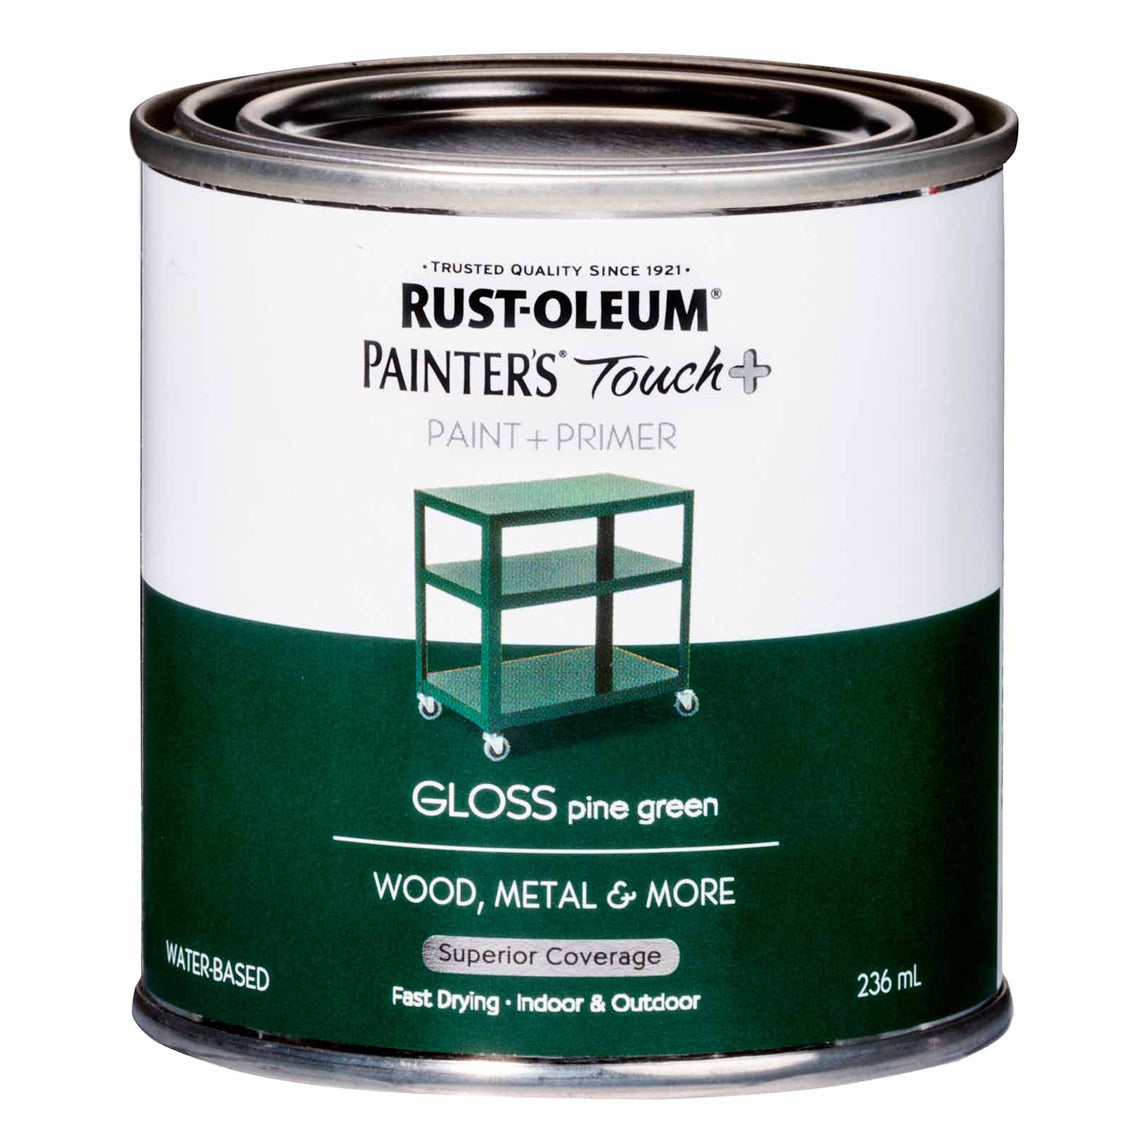 Painters Touch Plus Paint